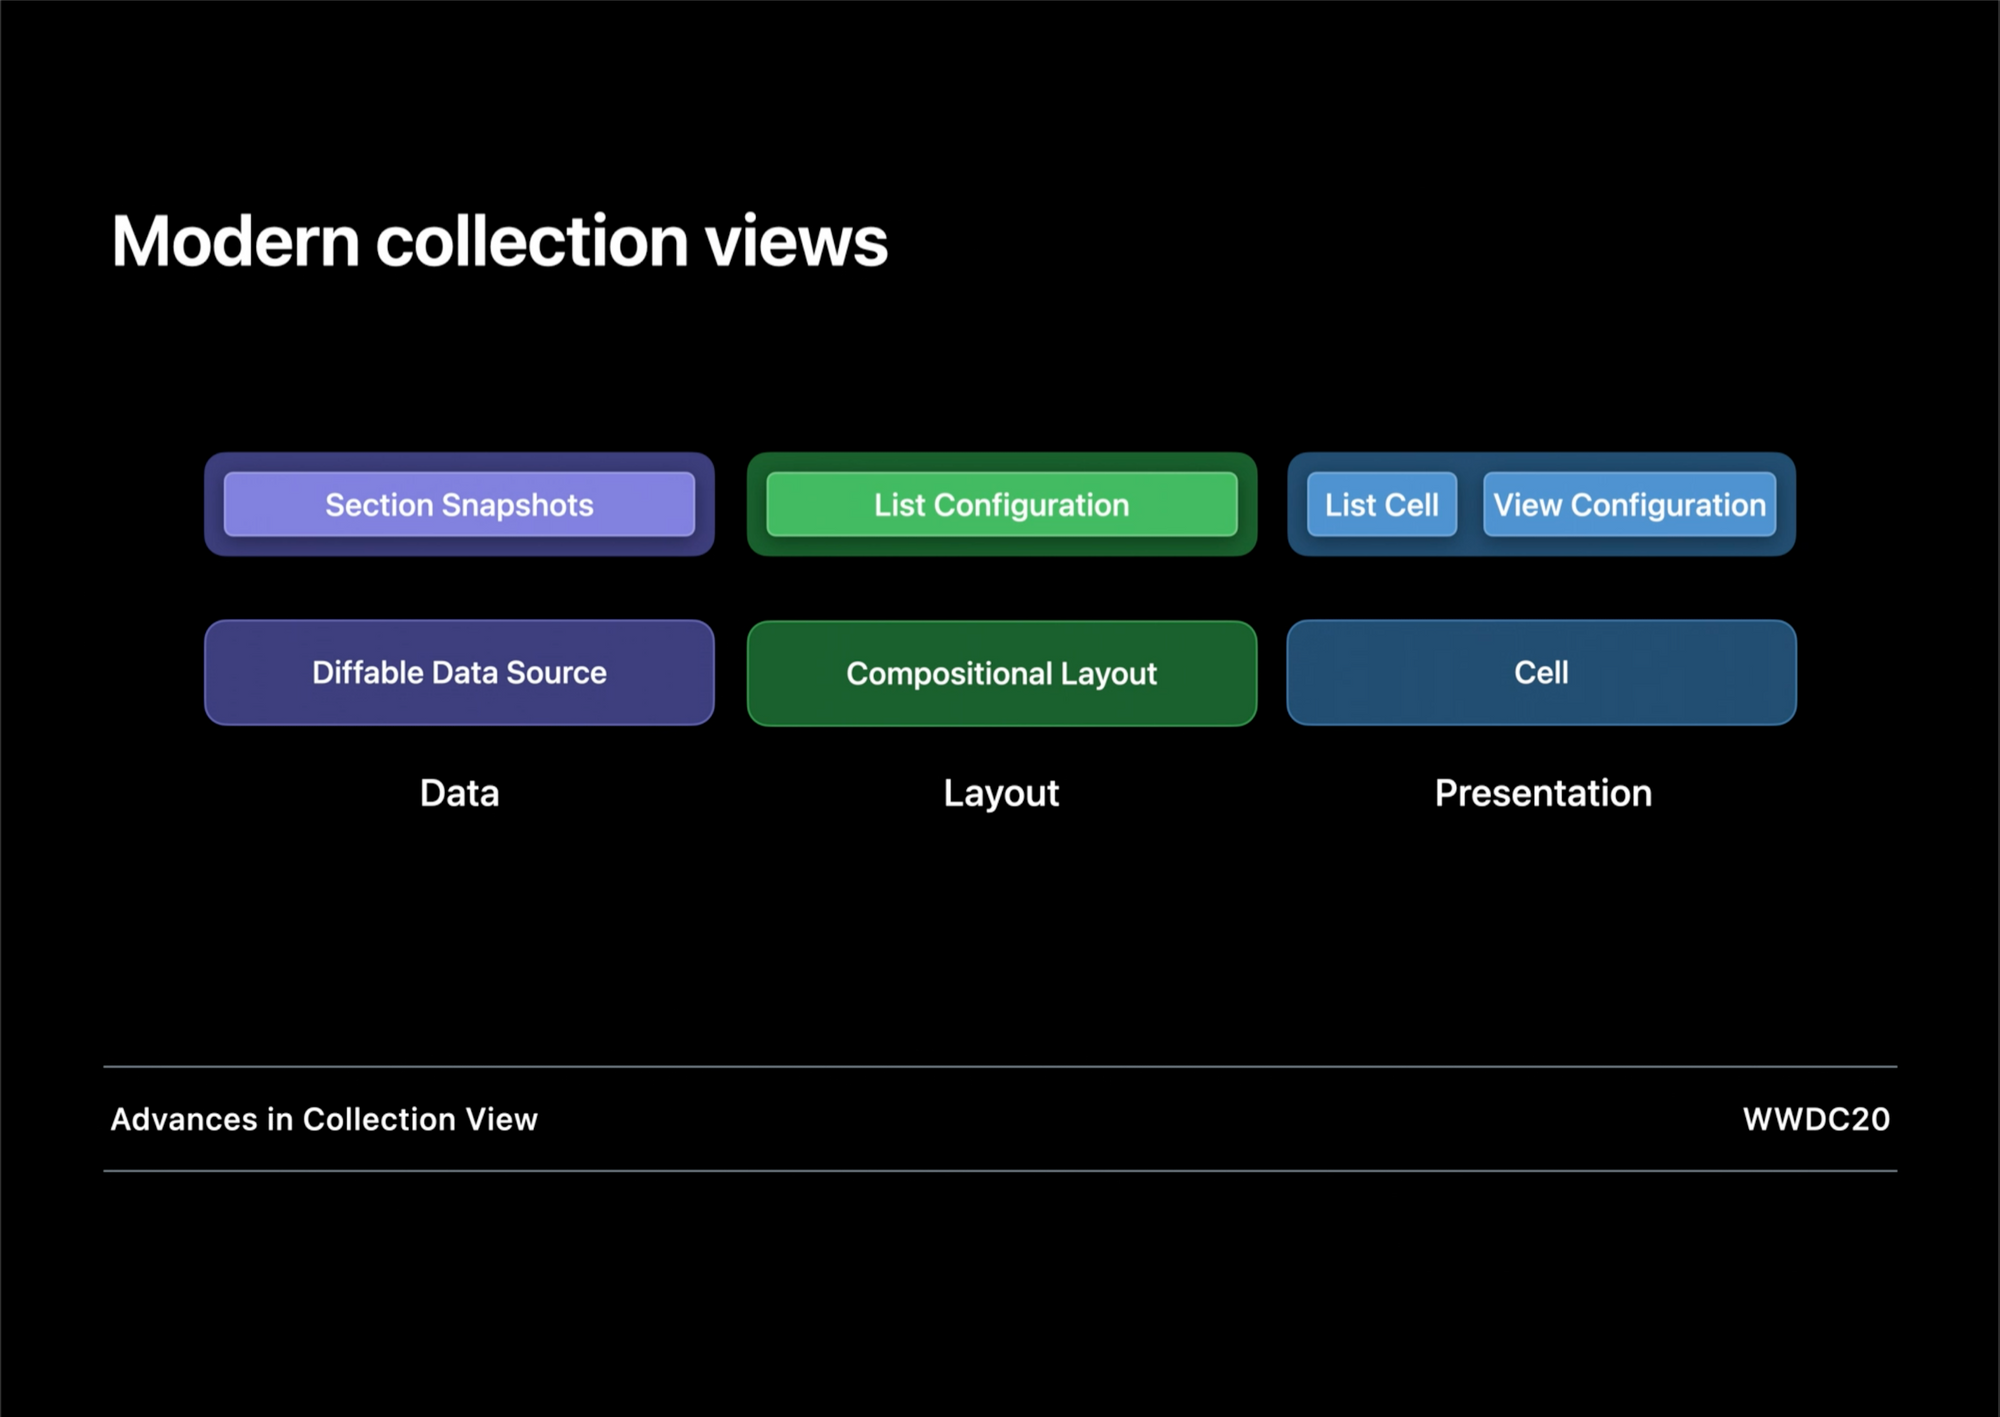 좀 더 나은 Collection View 를 위하여 - Diffable Data Source, Compositional Layout